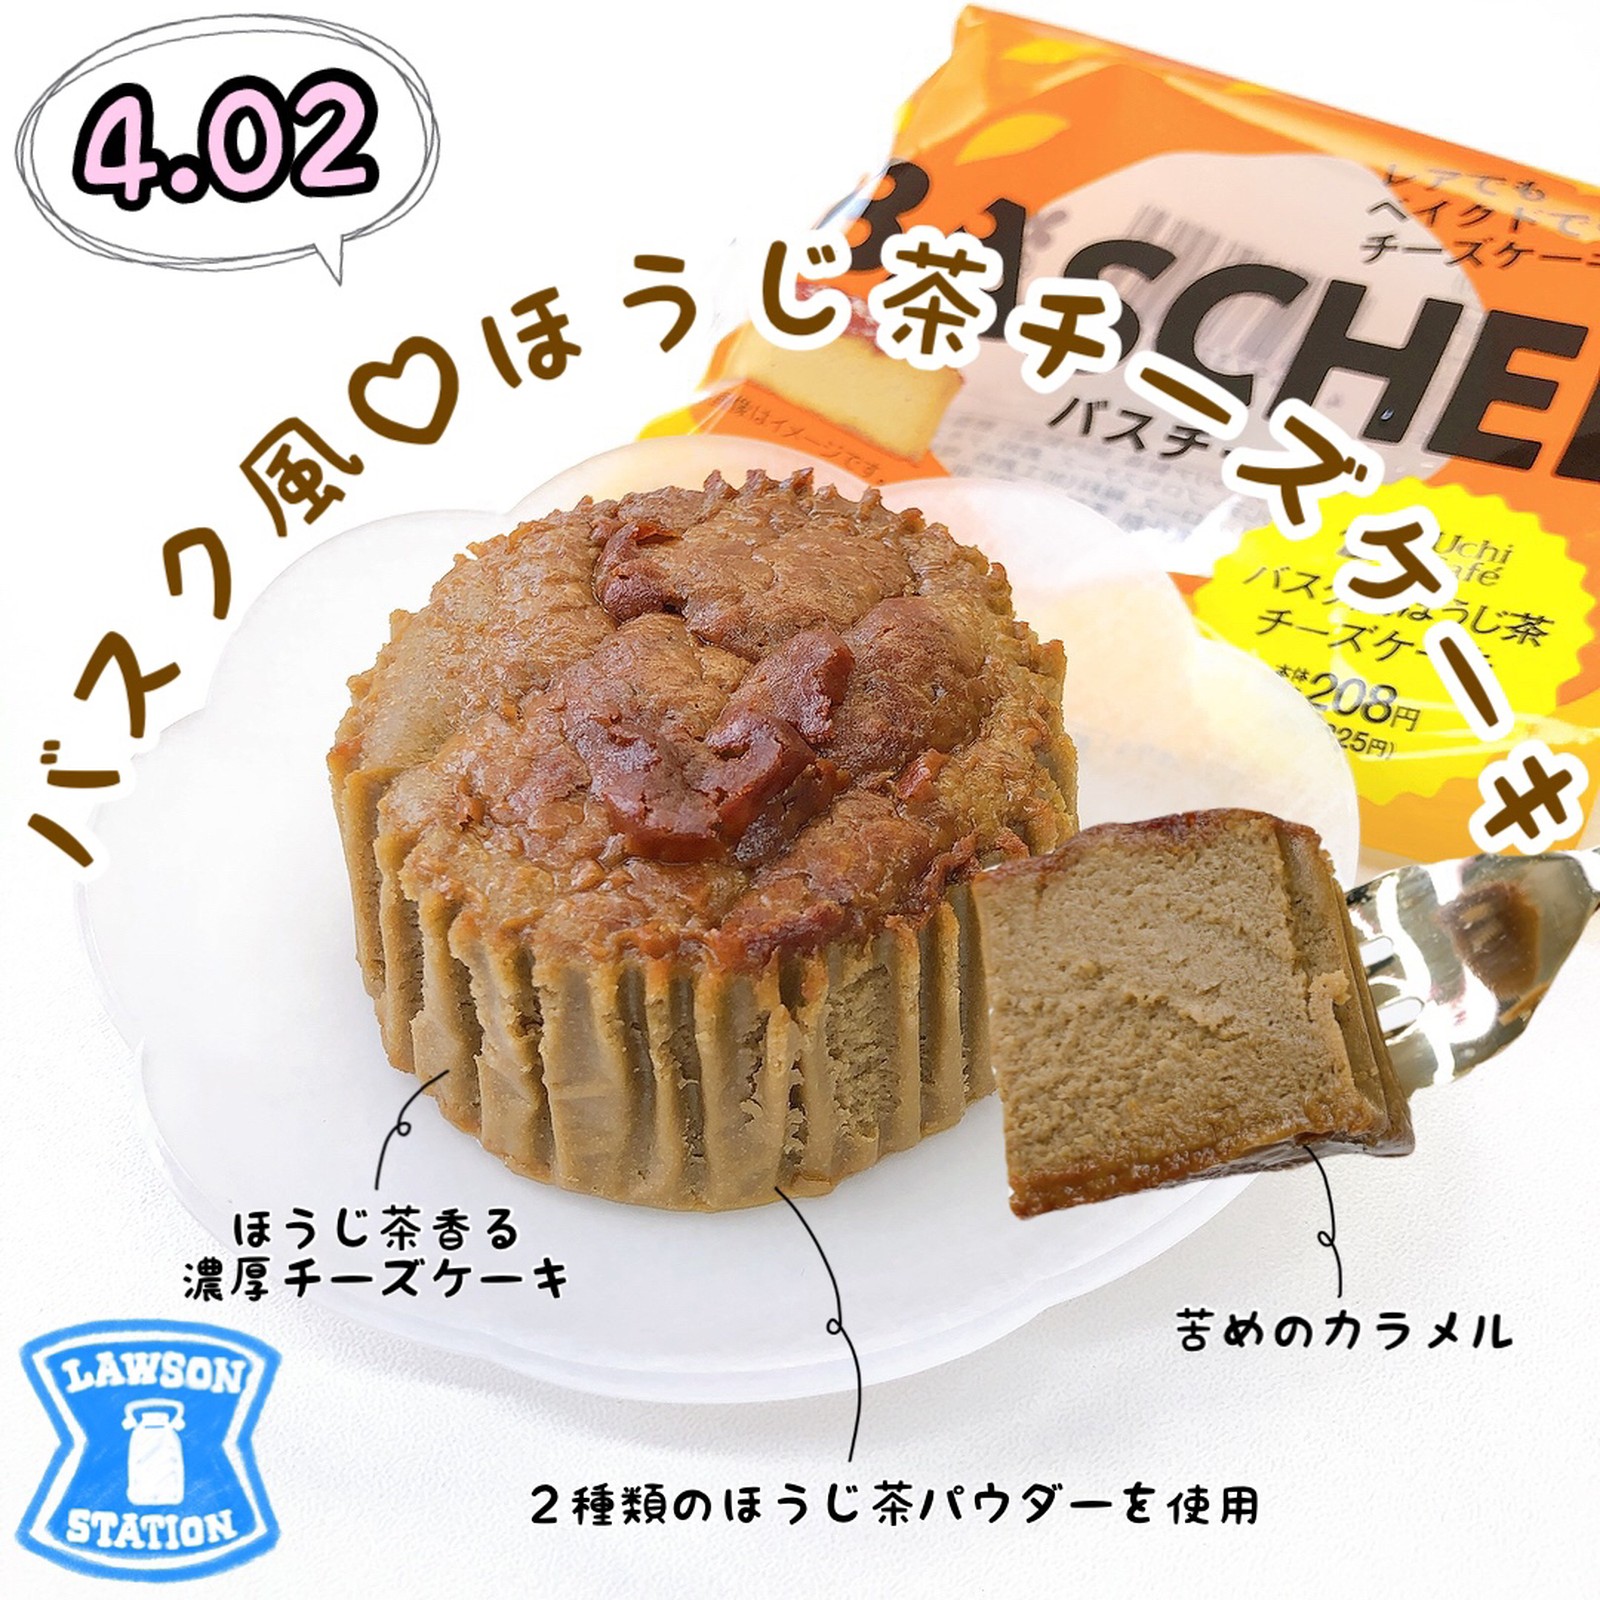 Lemon8 Story #おからパウダーチーズケーキ